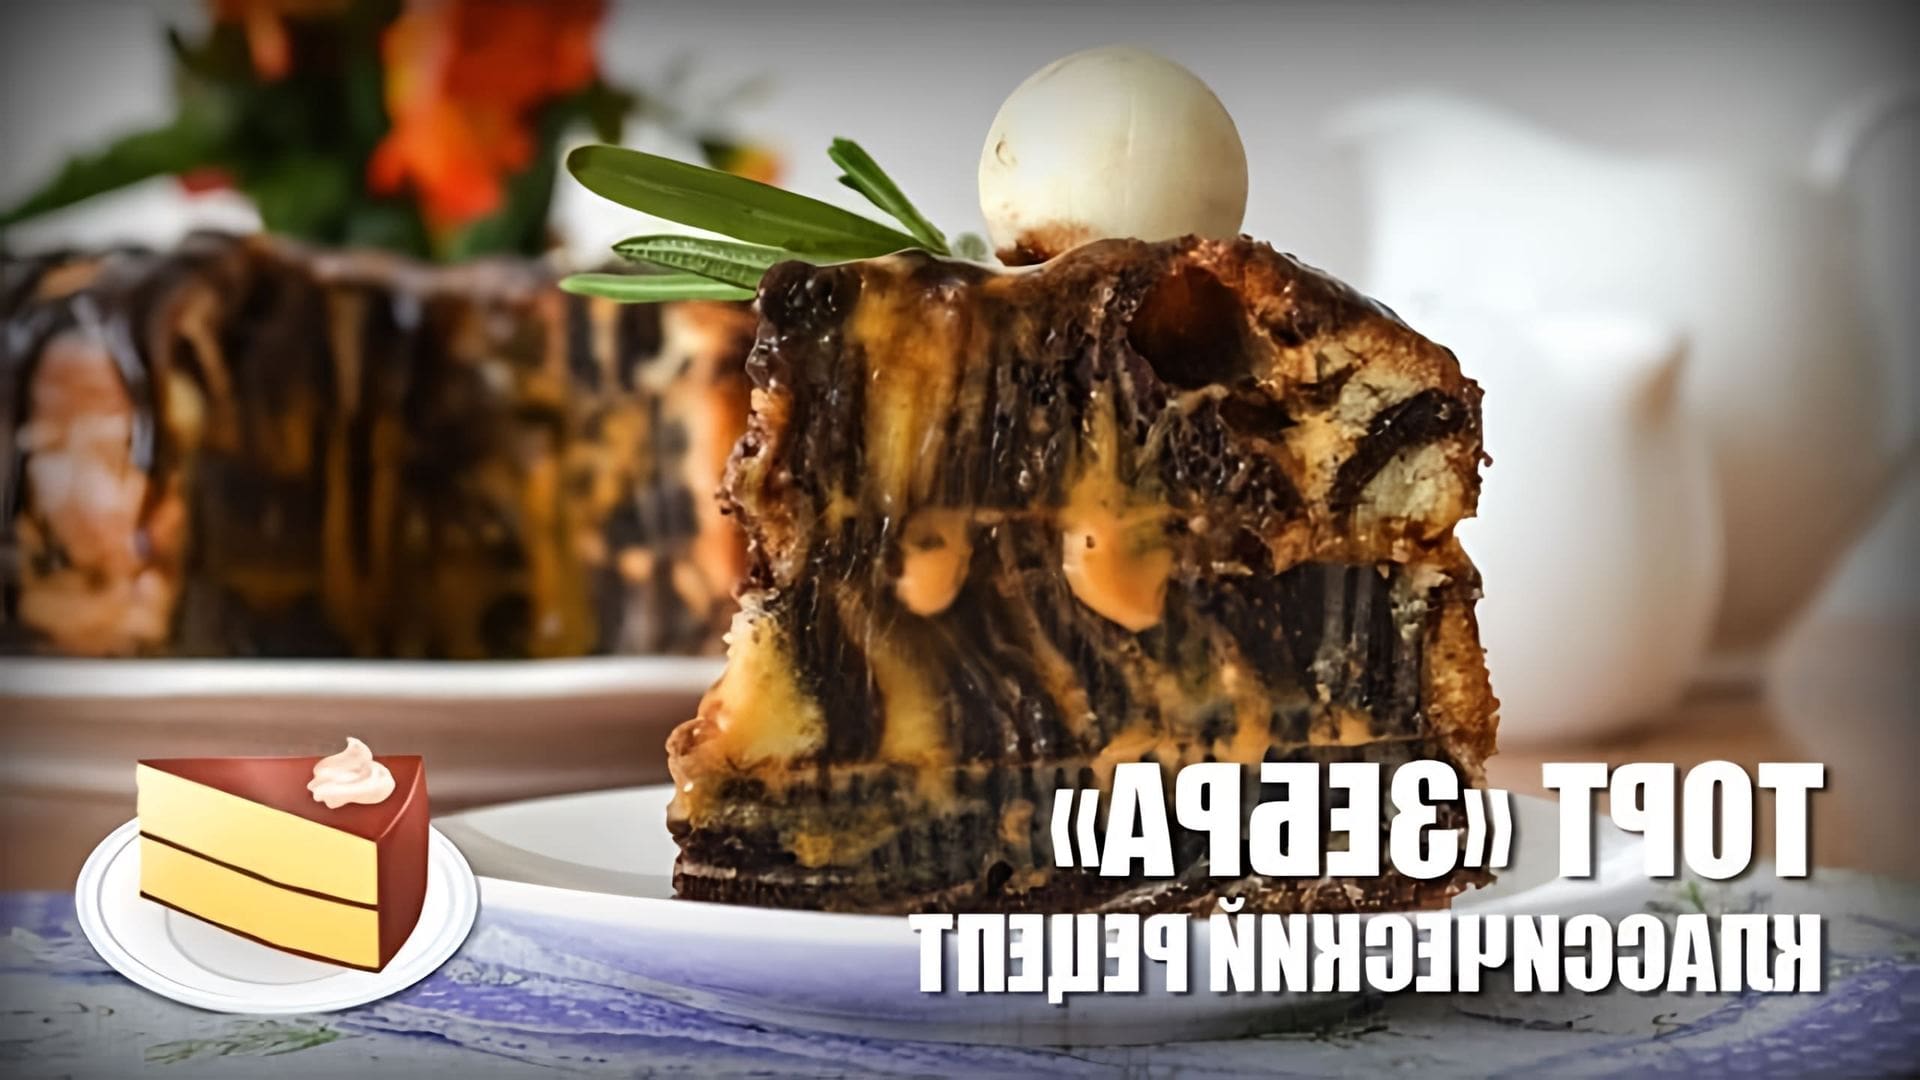 В этом видео представлен рецепт приготовления классического торта "Зебра"